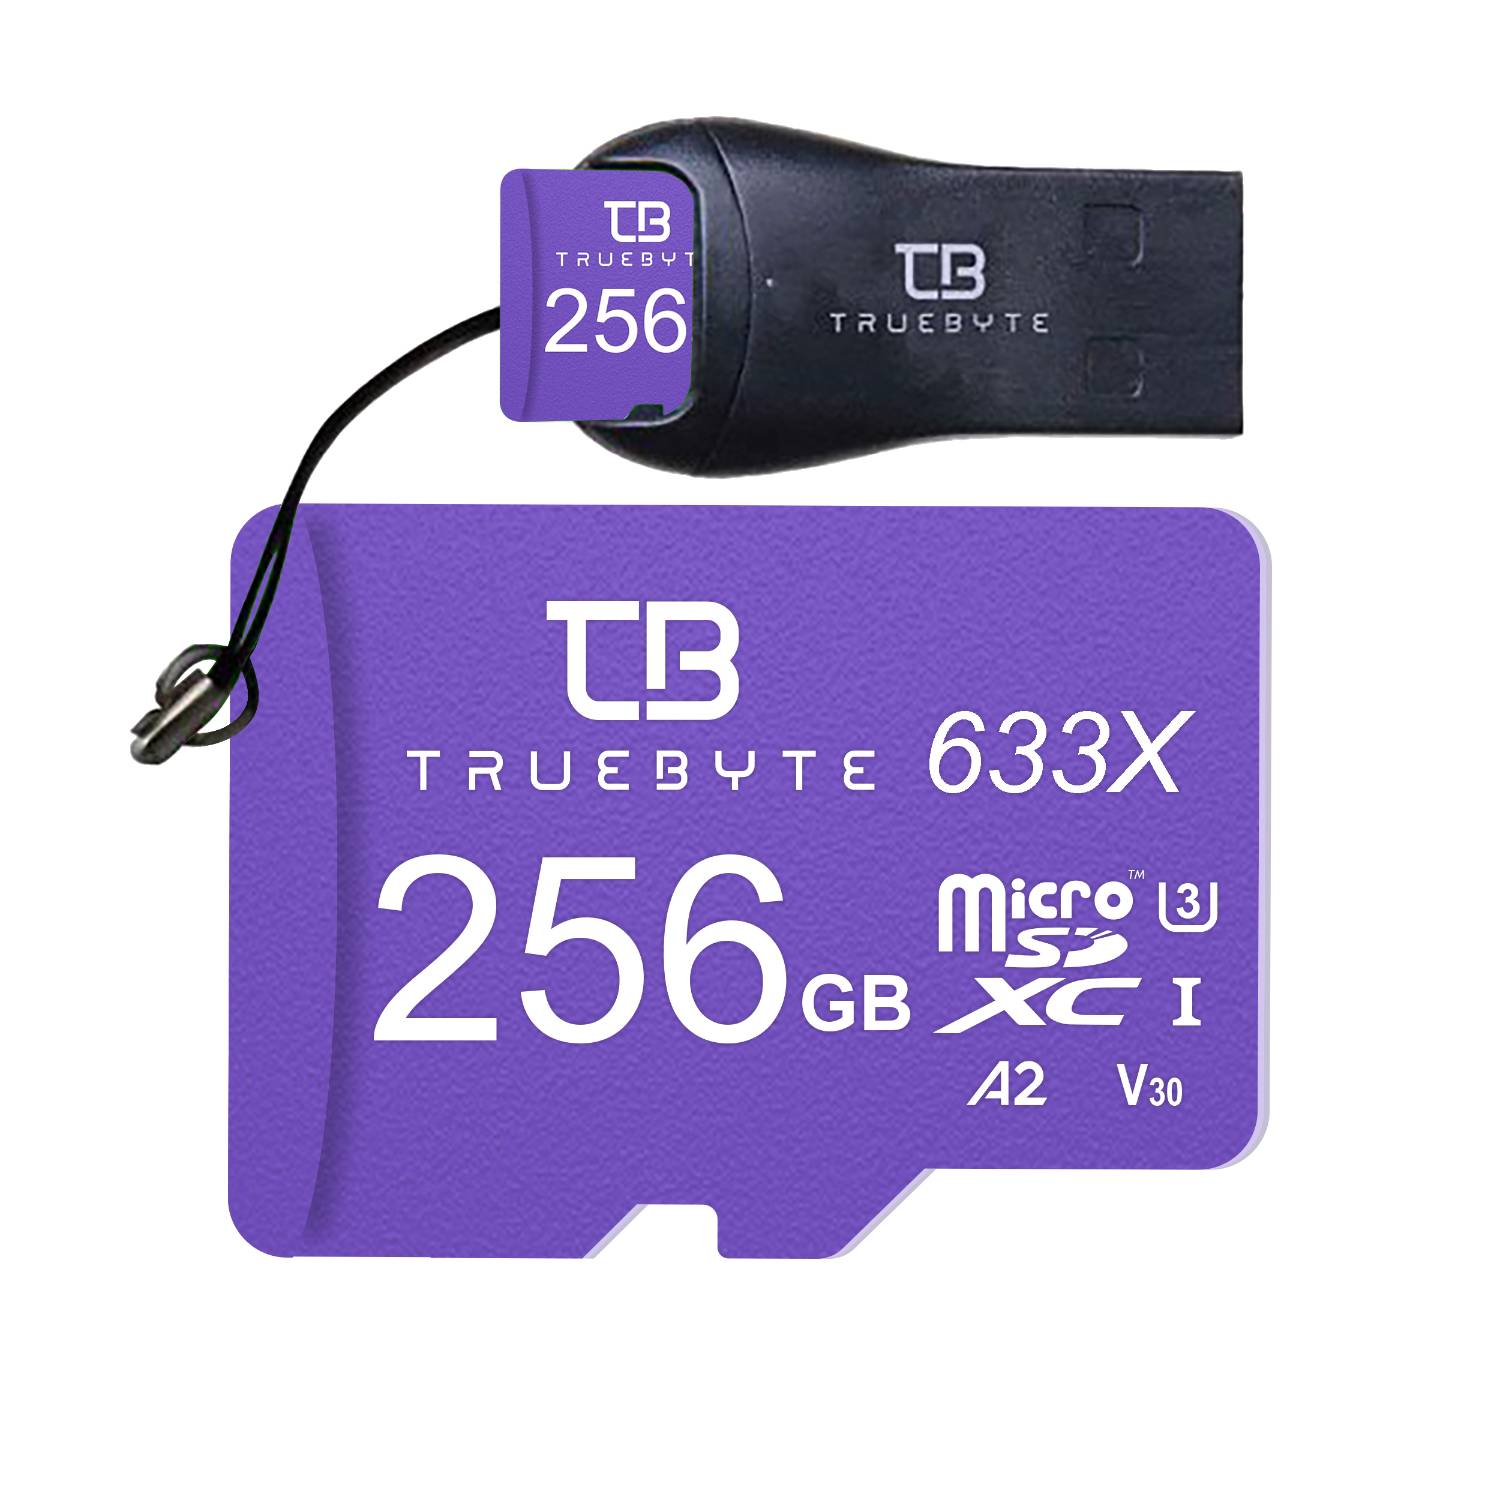  کارت حافظه microSDXC تروبایت مدل A2-V30-633X کلاس 10 استاندارد UHS-I U3 سرعت 95MBps ظرفیت 256 گیگابایت به همراه کارت خوان